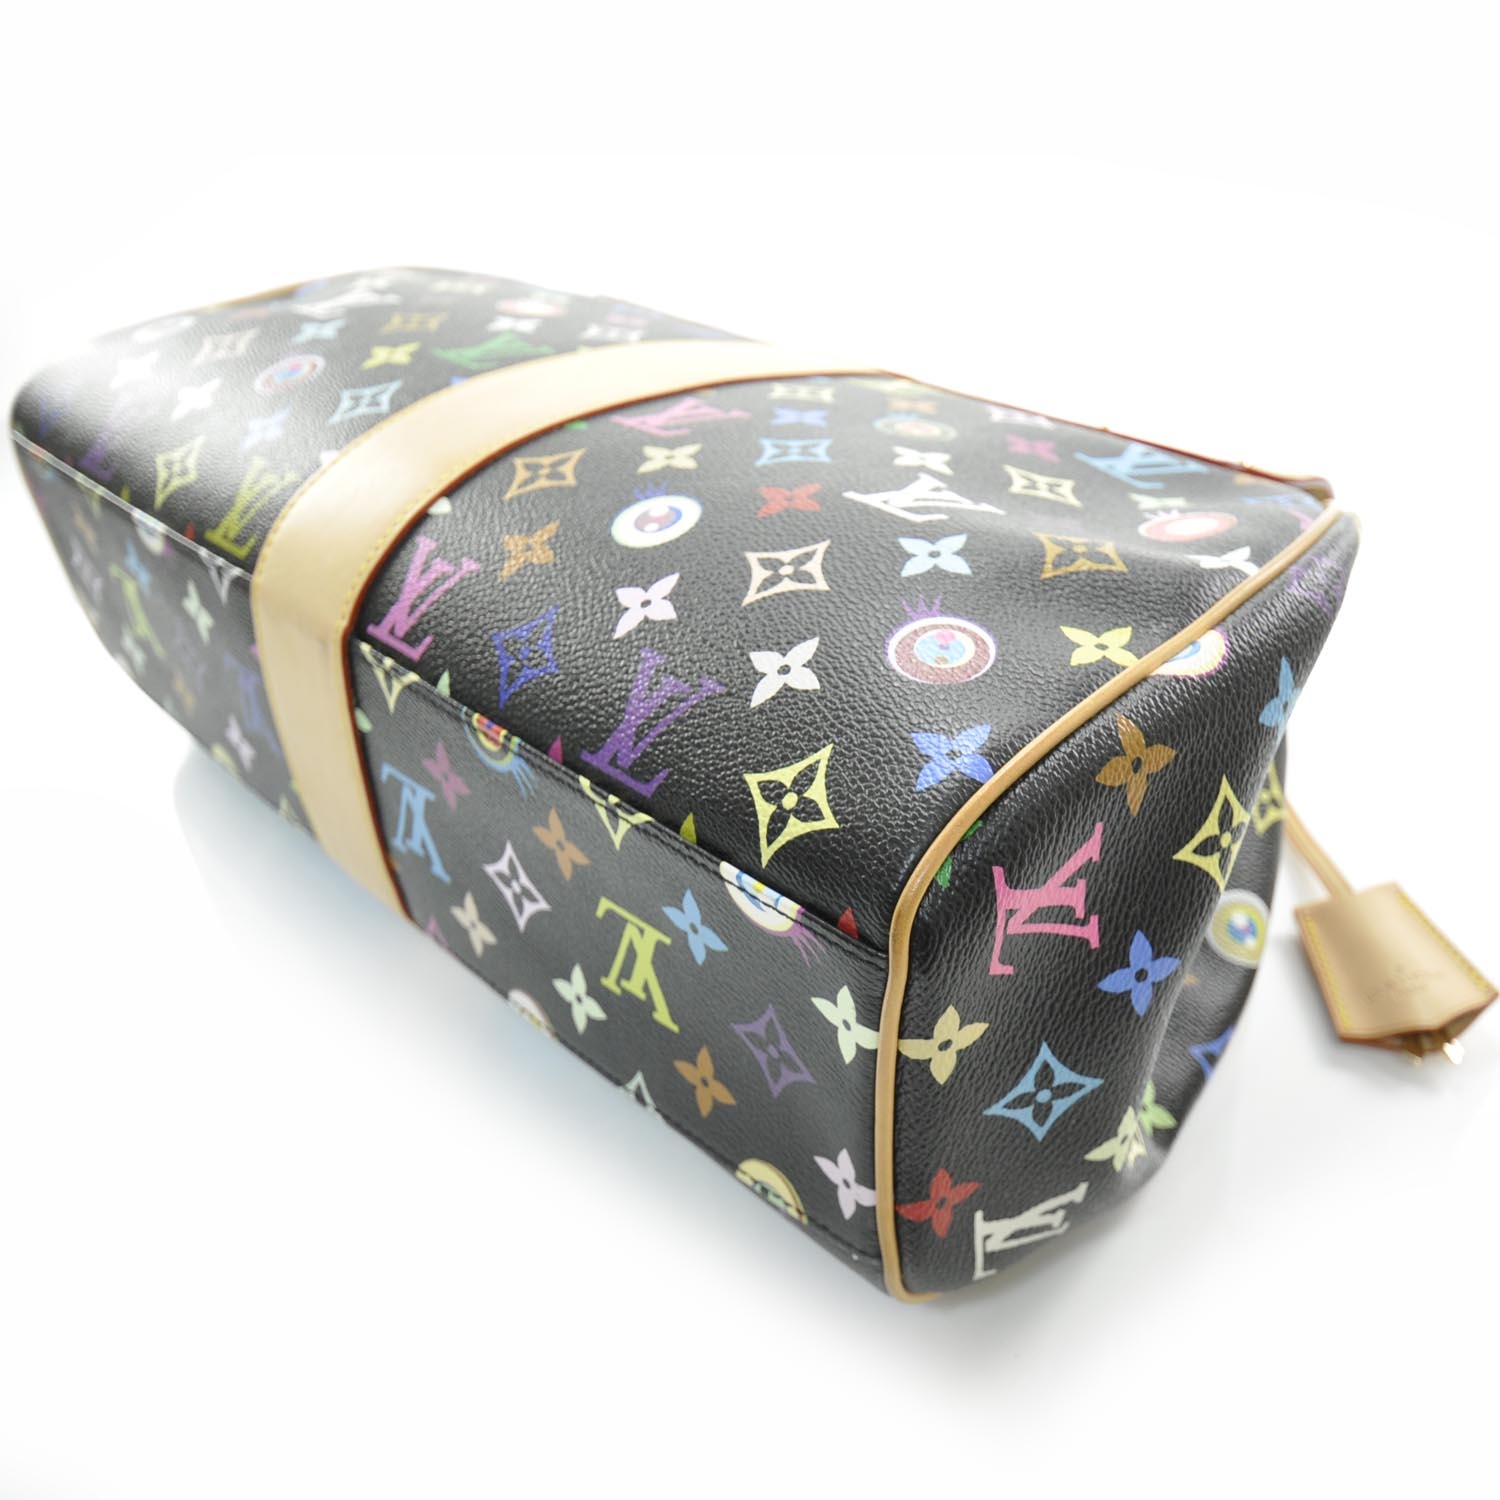 Handbag Takashi Murakami Black in Cotton - 27460268